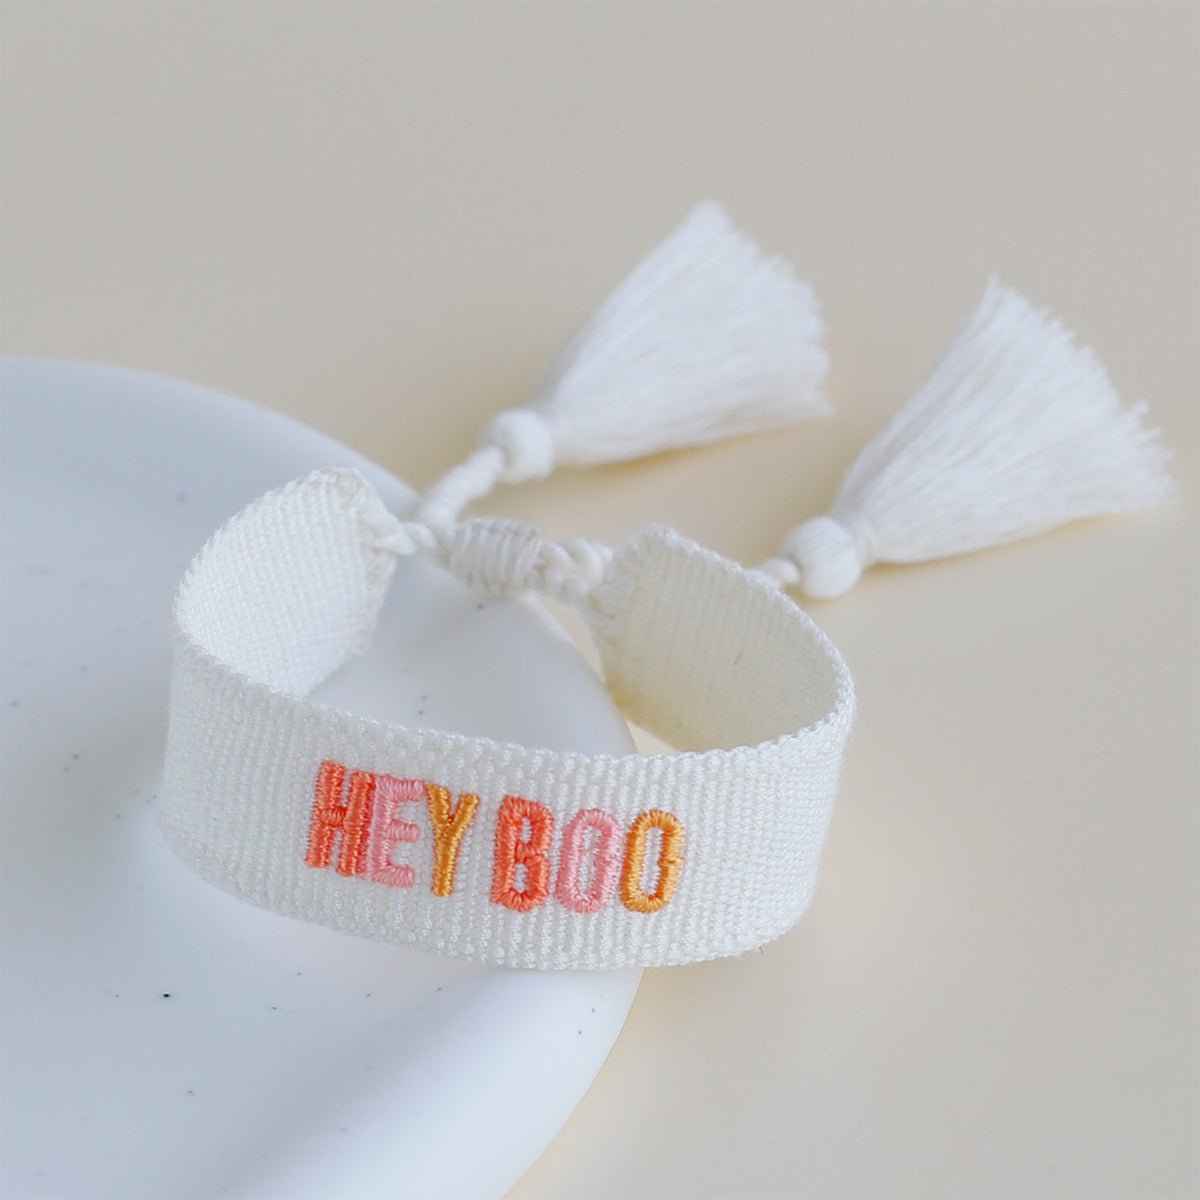 Woven Tassel Bracelet - Hey Boo